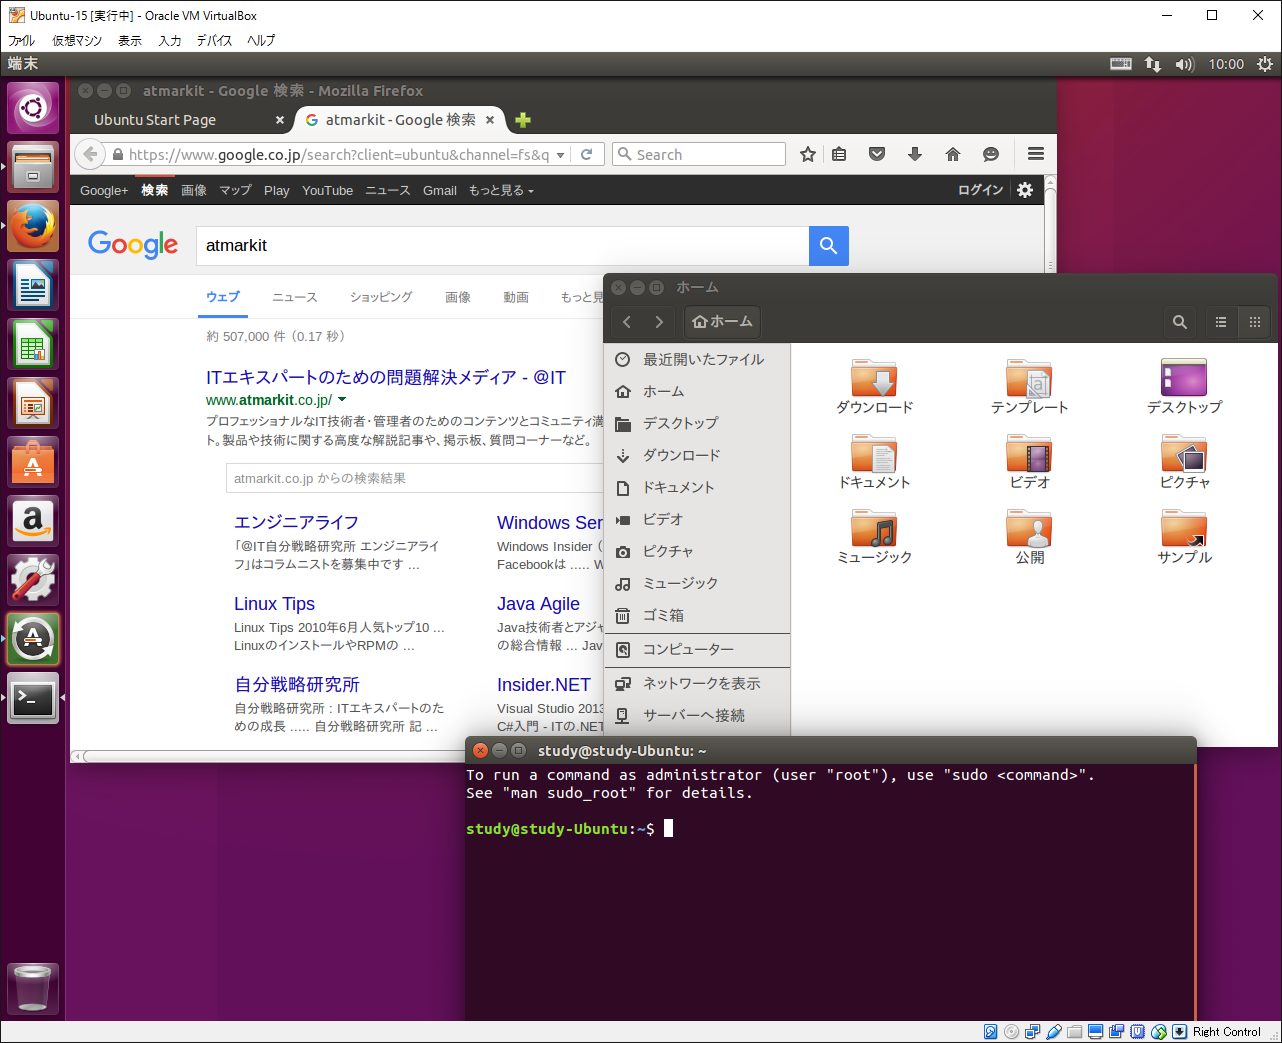 2@Ubuntu 15.10̃fXNgbv